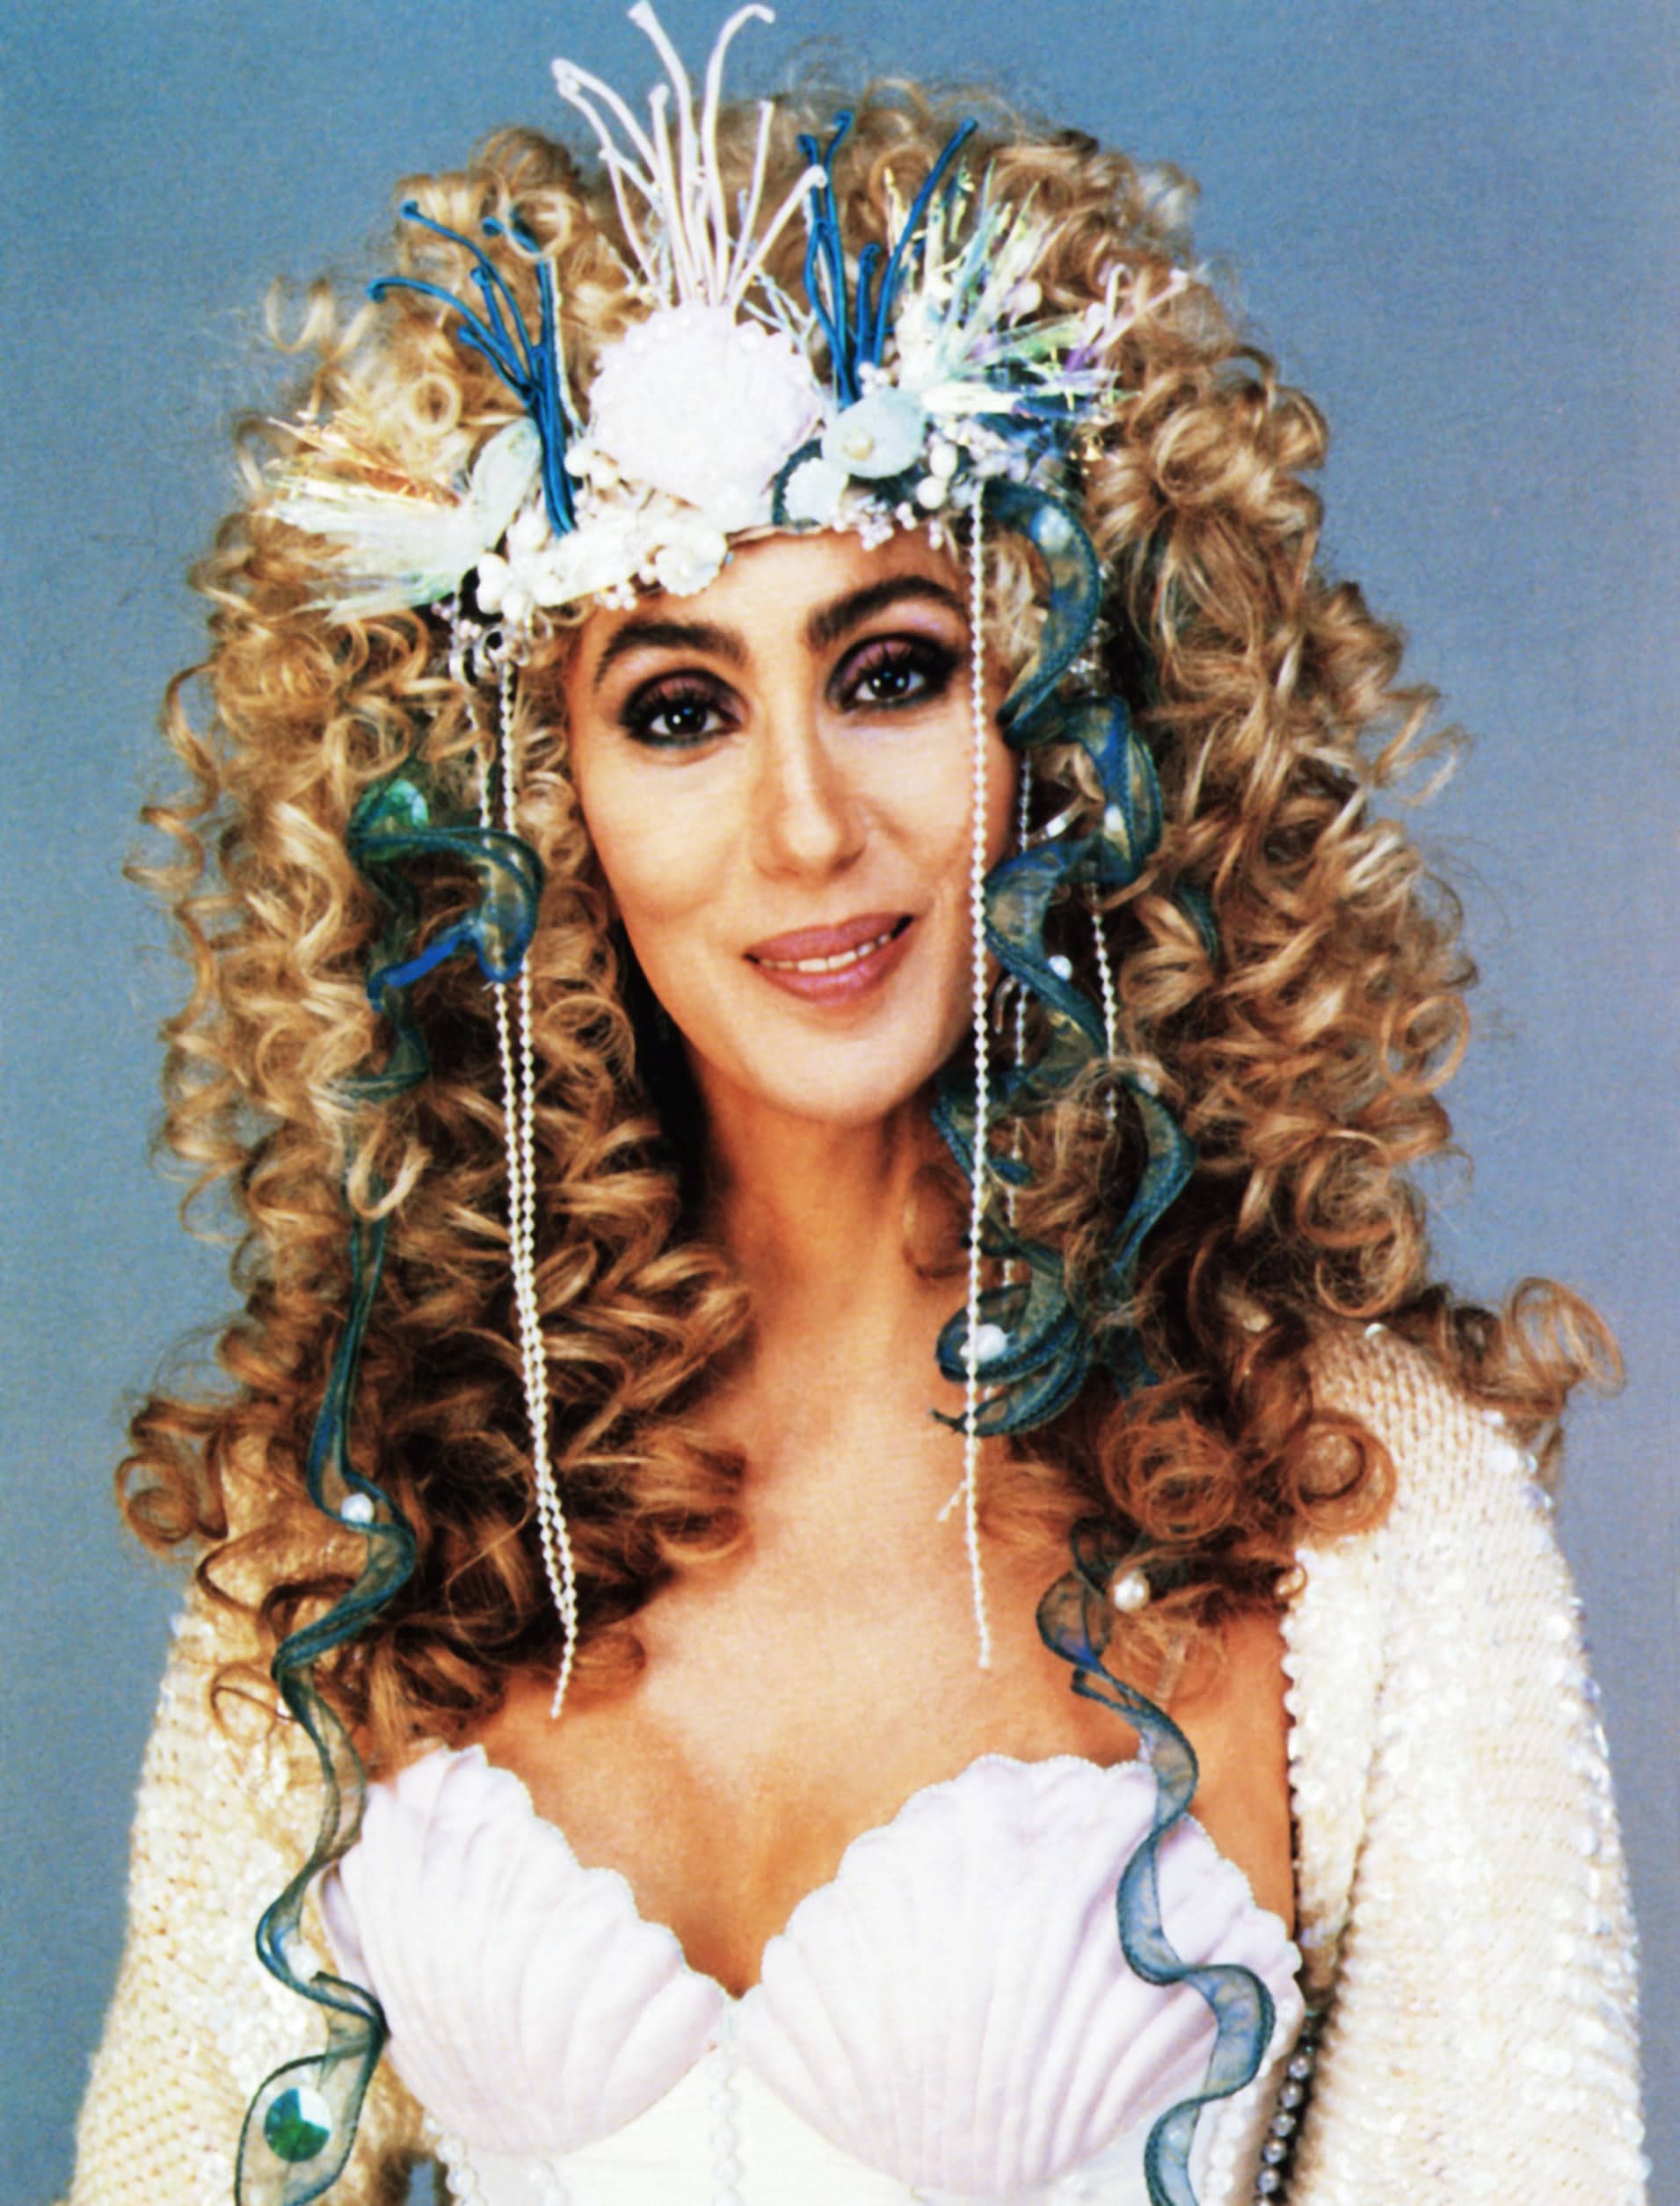 MERMAIDS, Cher, 1990